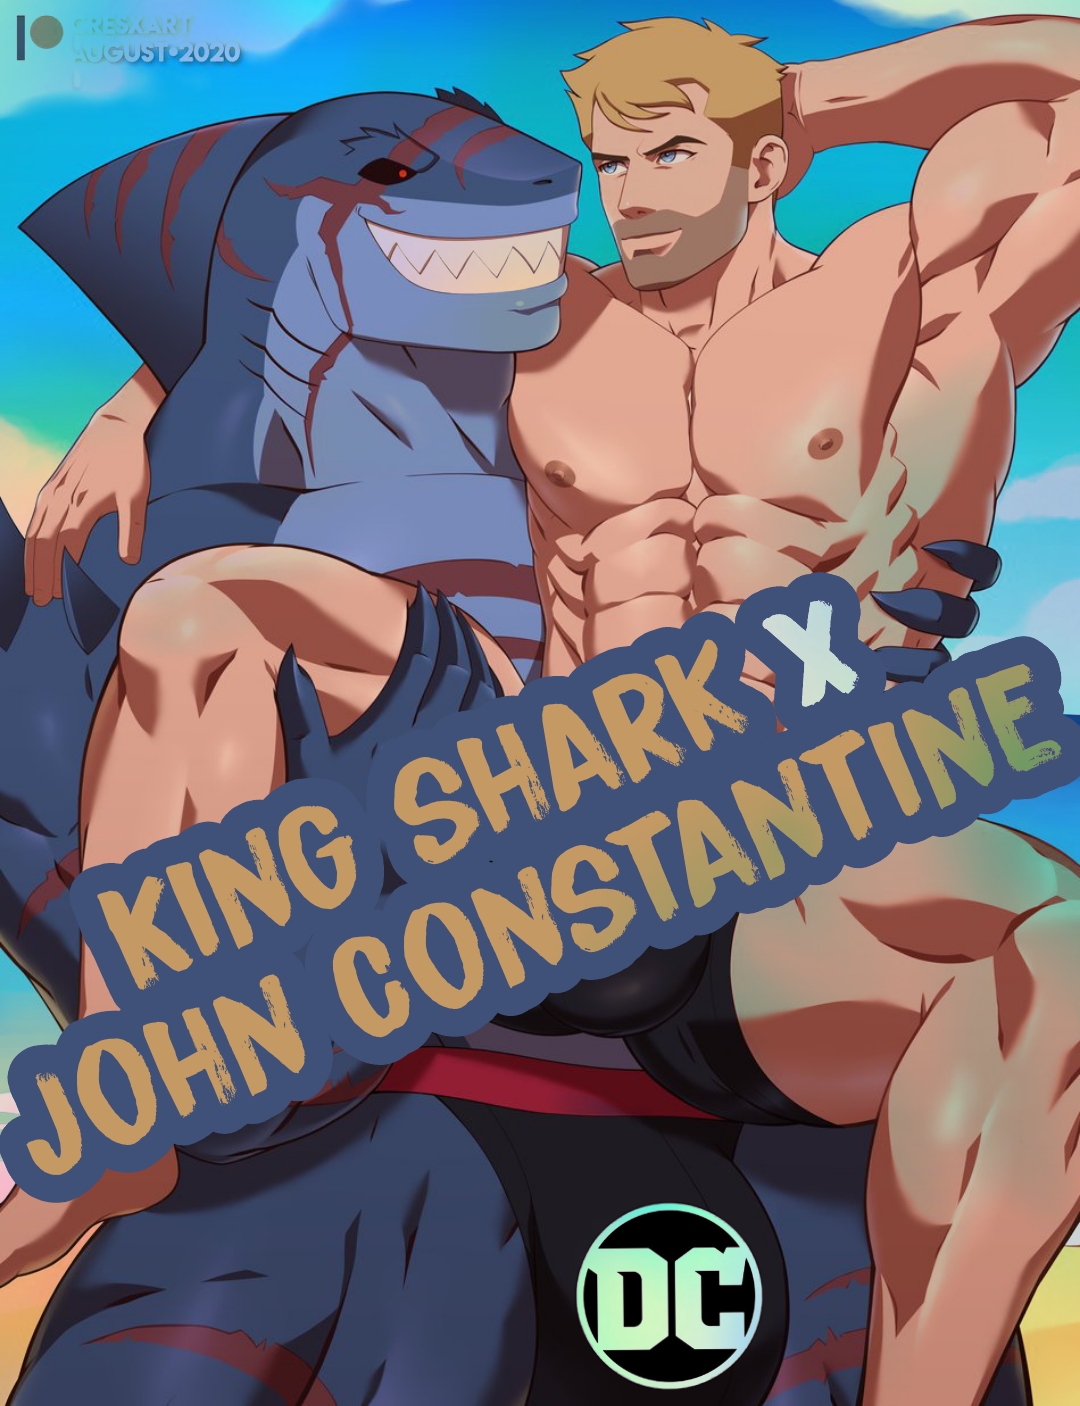 [wolf con f] Câu chuyện bên lề - King shark x John Constantine (RONALD) - Trang 12